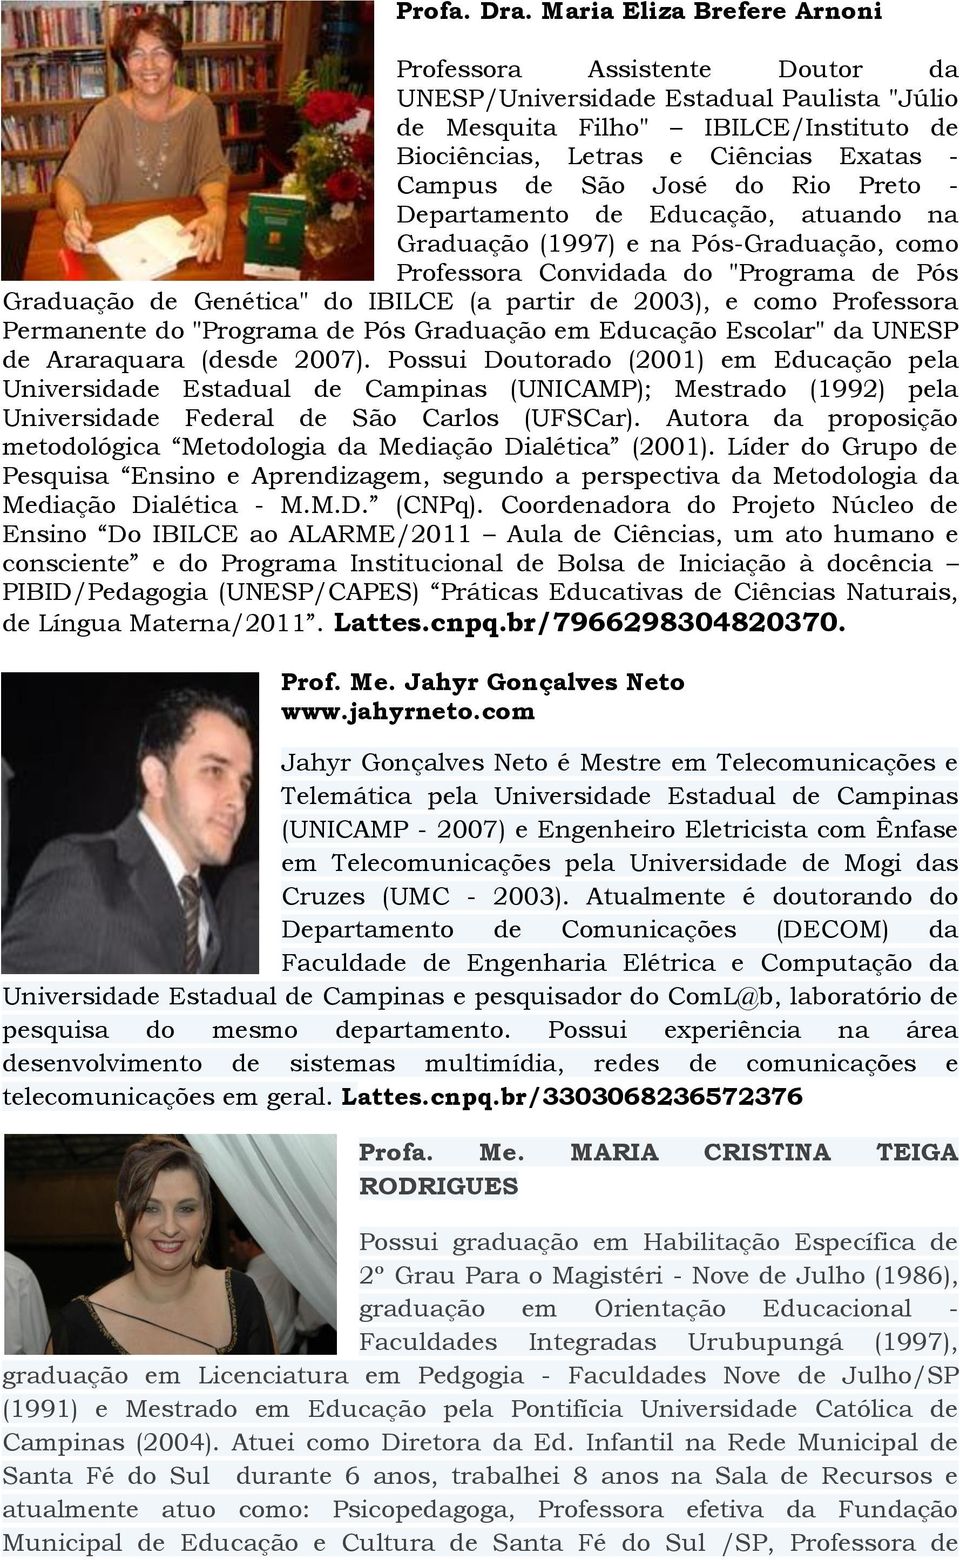 José do Rio Preto - Departamento de Educação, atuando na Graduação (1997) e na Pós-Graduação, como Professora Convidada do "Programa de Pós Graduação de Genética" do IBILCE (a partir de 2003), e como